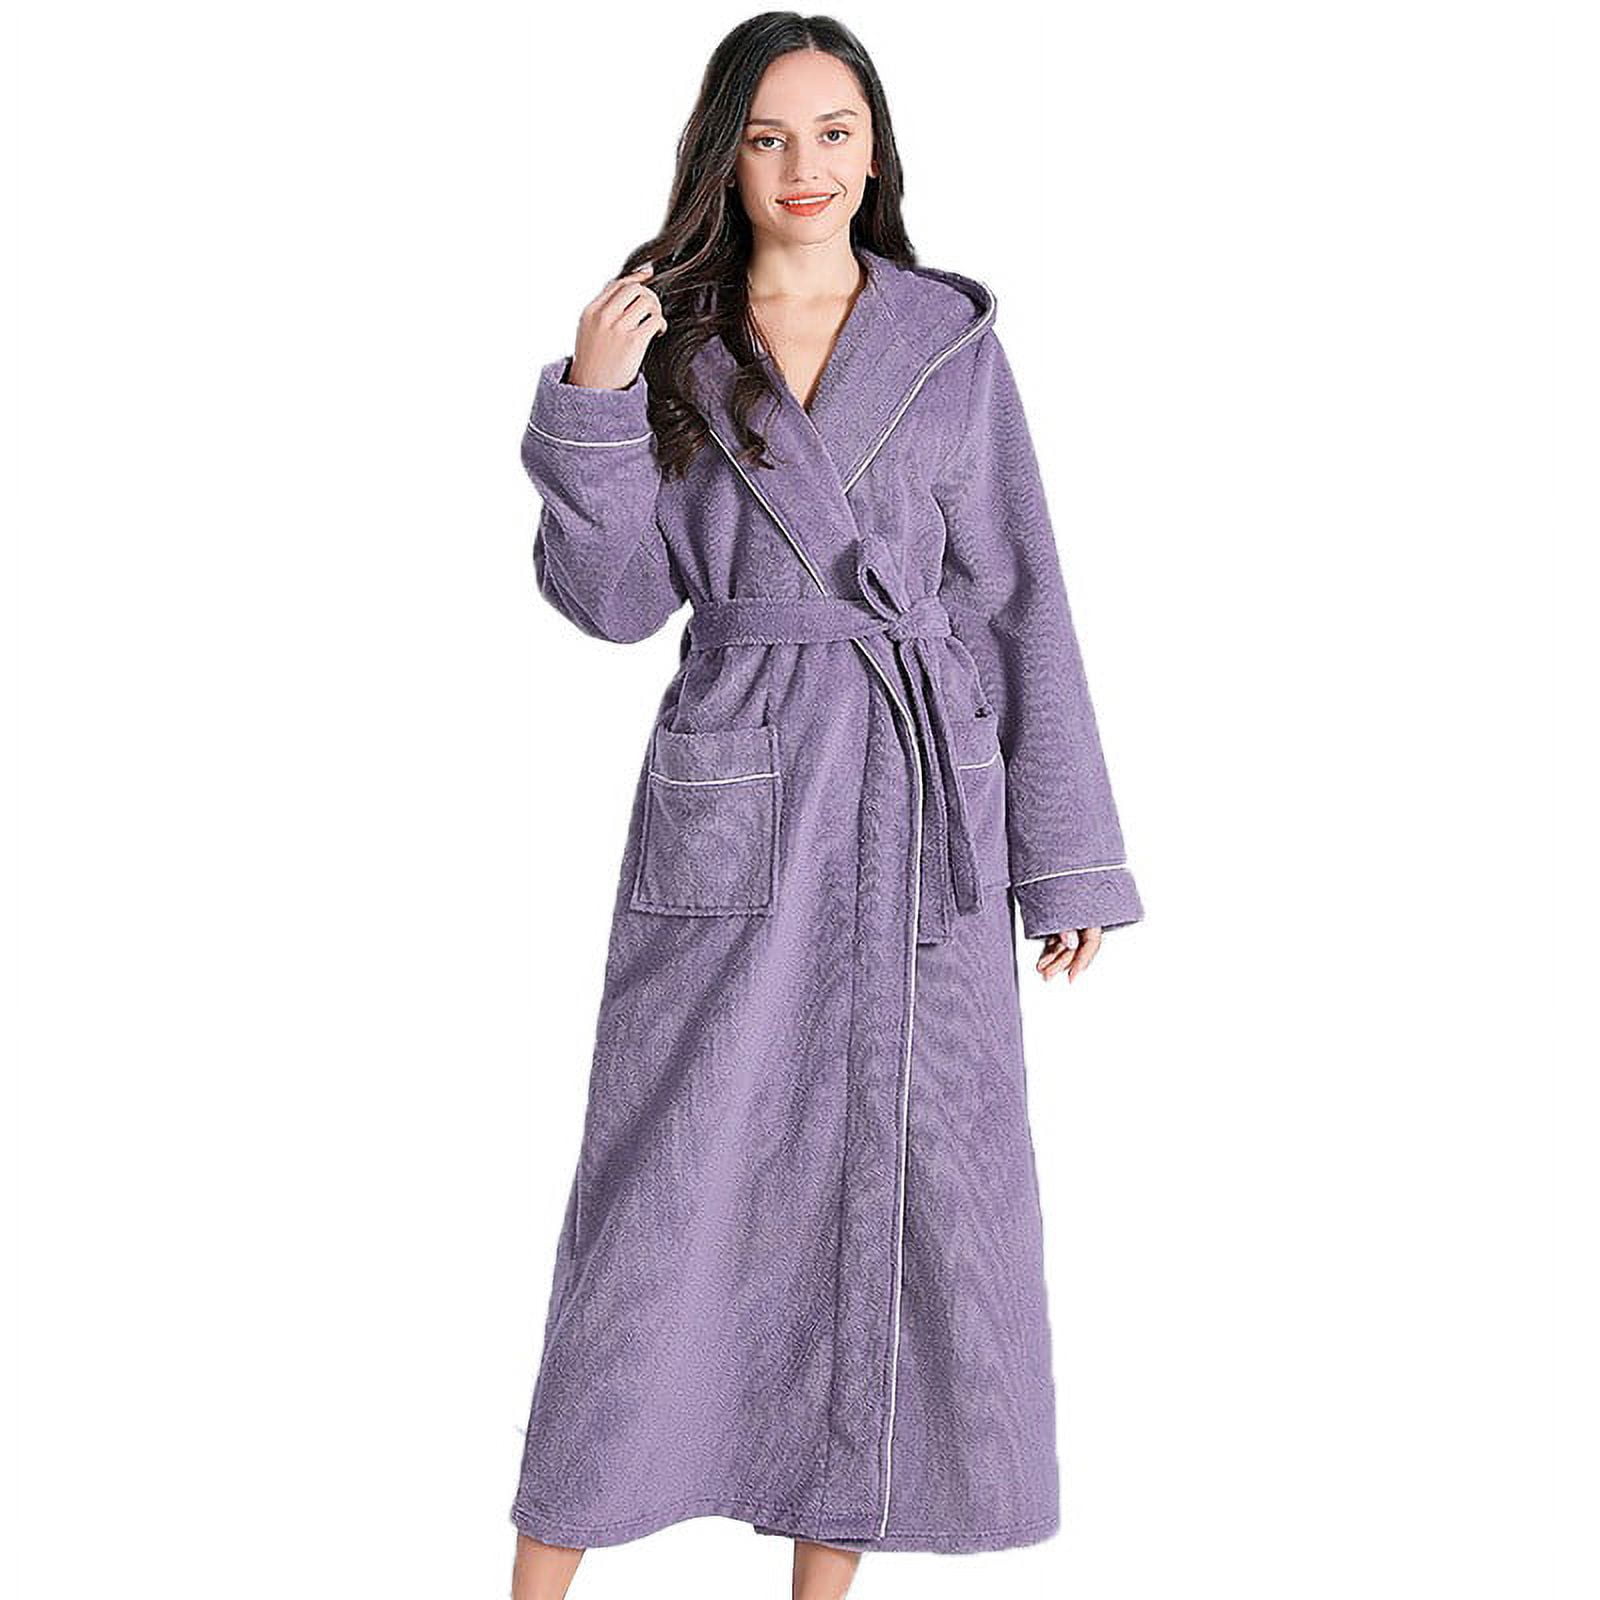 Fluffy Dressing Gowns Women Men Ladies Long Nightgowns Hood UK Fleece Robes Belted Full Length Bathrobes Pockets Super Soft Plush Velvet Flannel Pyja a255cfa2 acfd 4e13 91c7 4056909a23af.ac0336fce27837b1beb0a9a0769f1e89